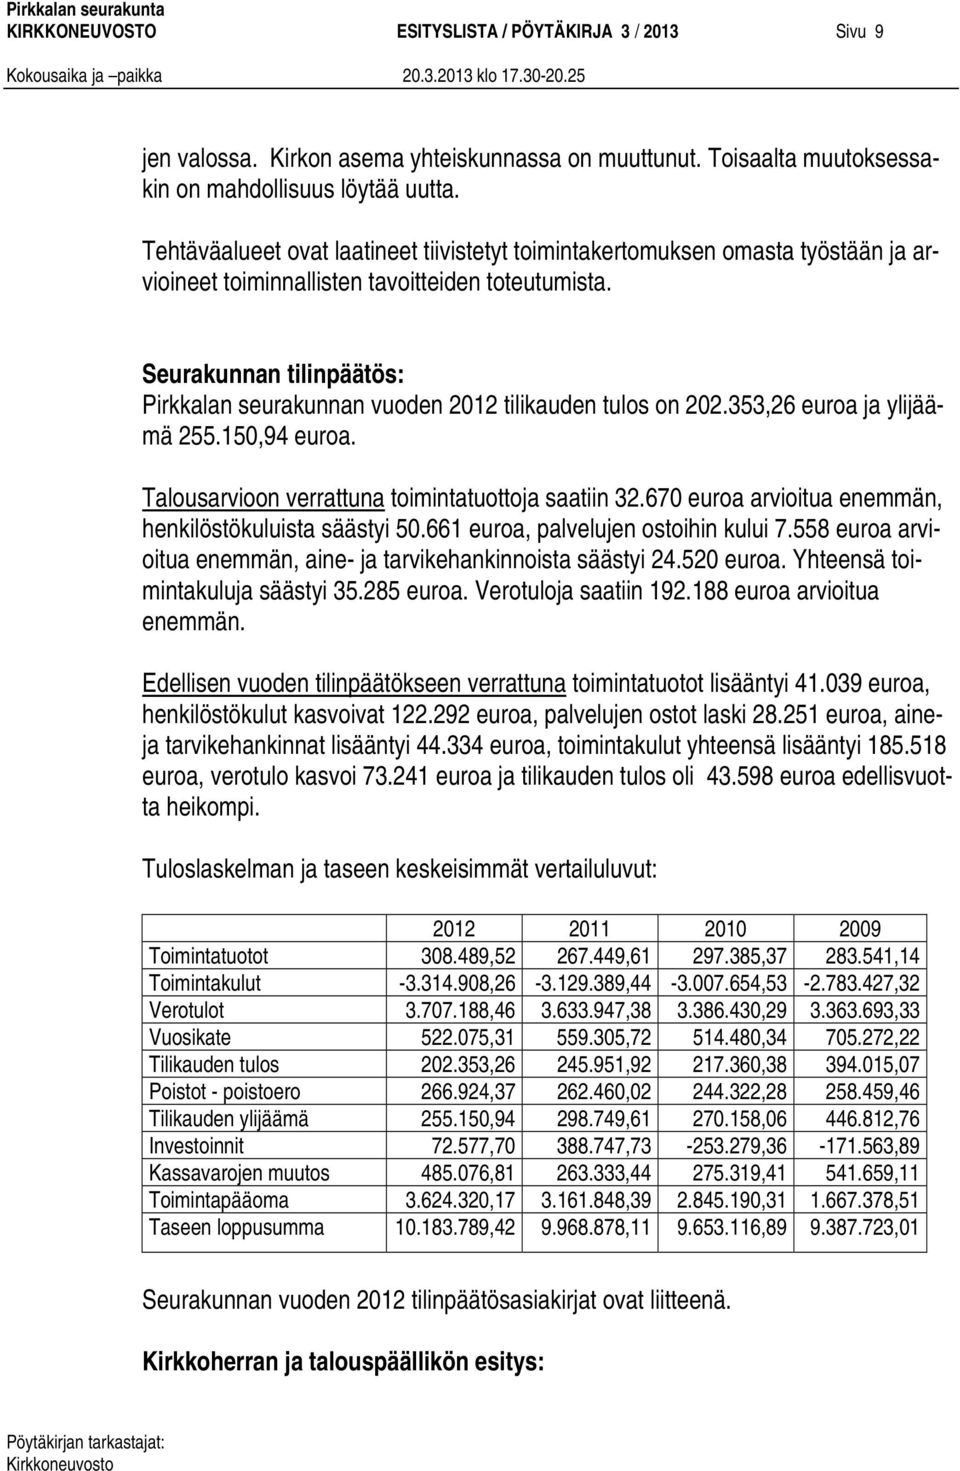 Seurakunnan tilinpäätös: Pirkkalan seurakunnan vuoden 2012 tilikauden tulos on 202.353,26 euroa ja ylijäämä 255.150,94 euroa. Talousarvioon verrattuna toimintatuottoja saatiin 32.